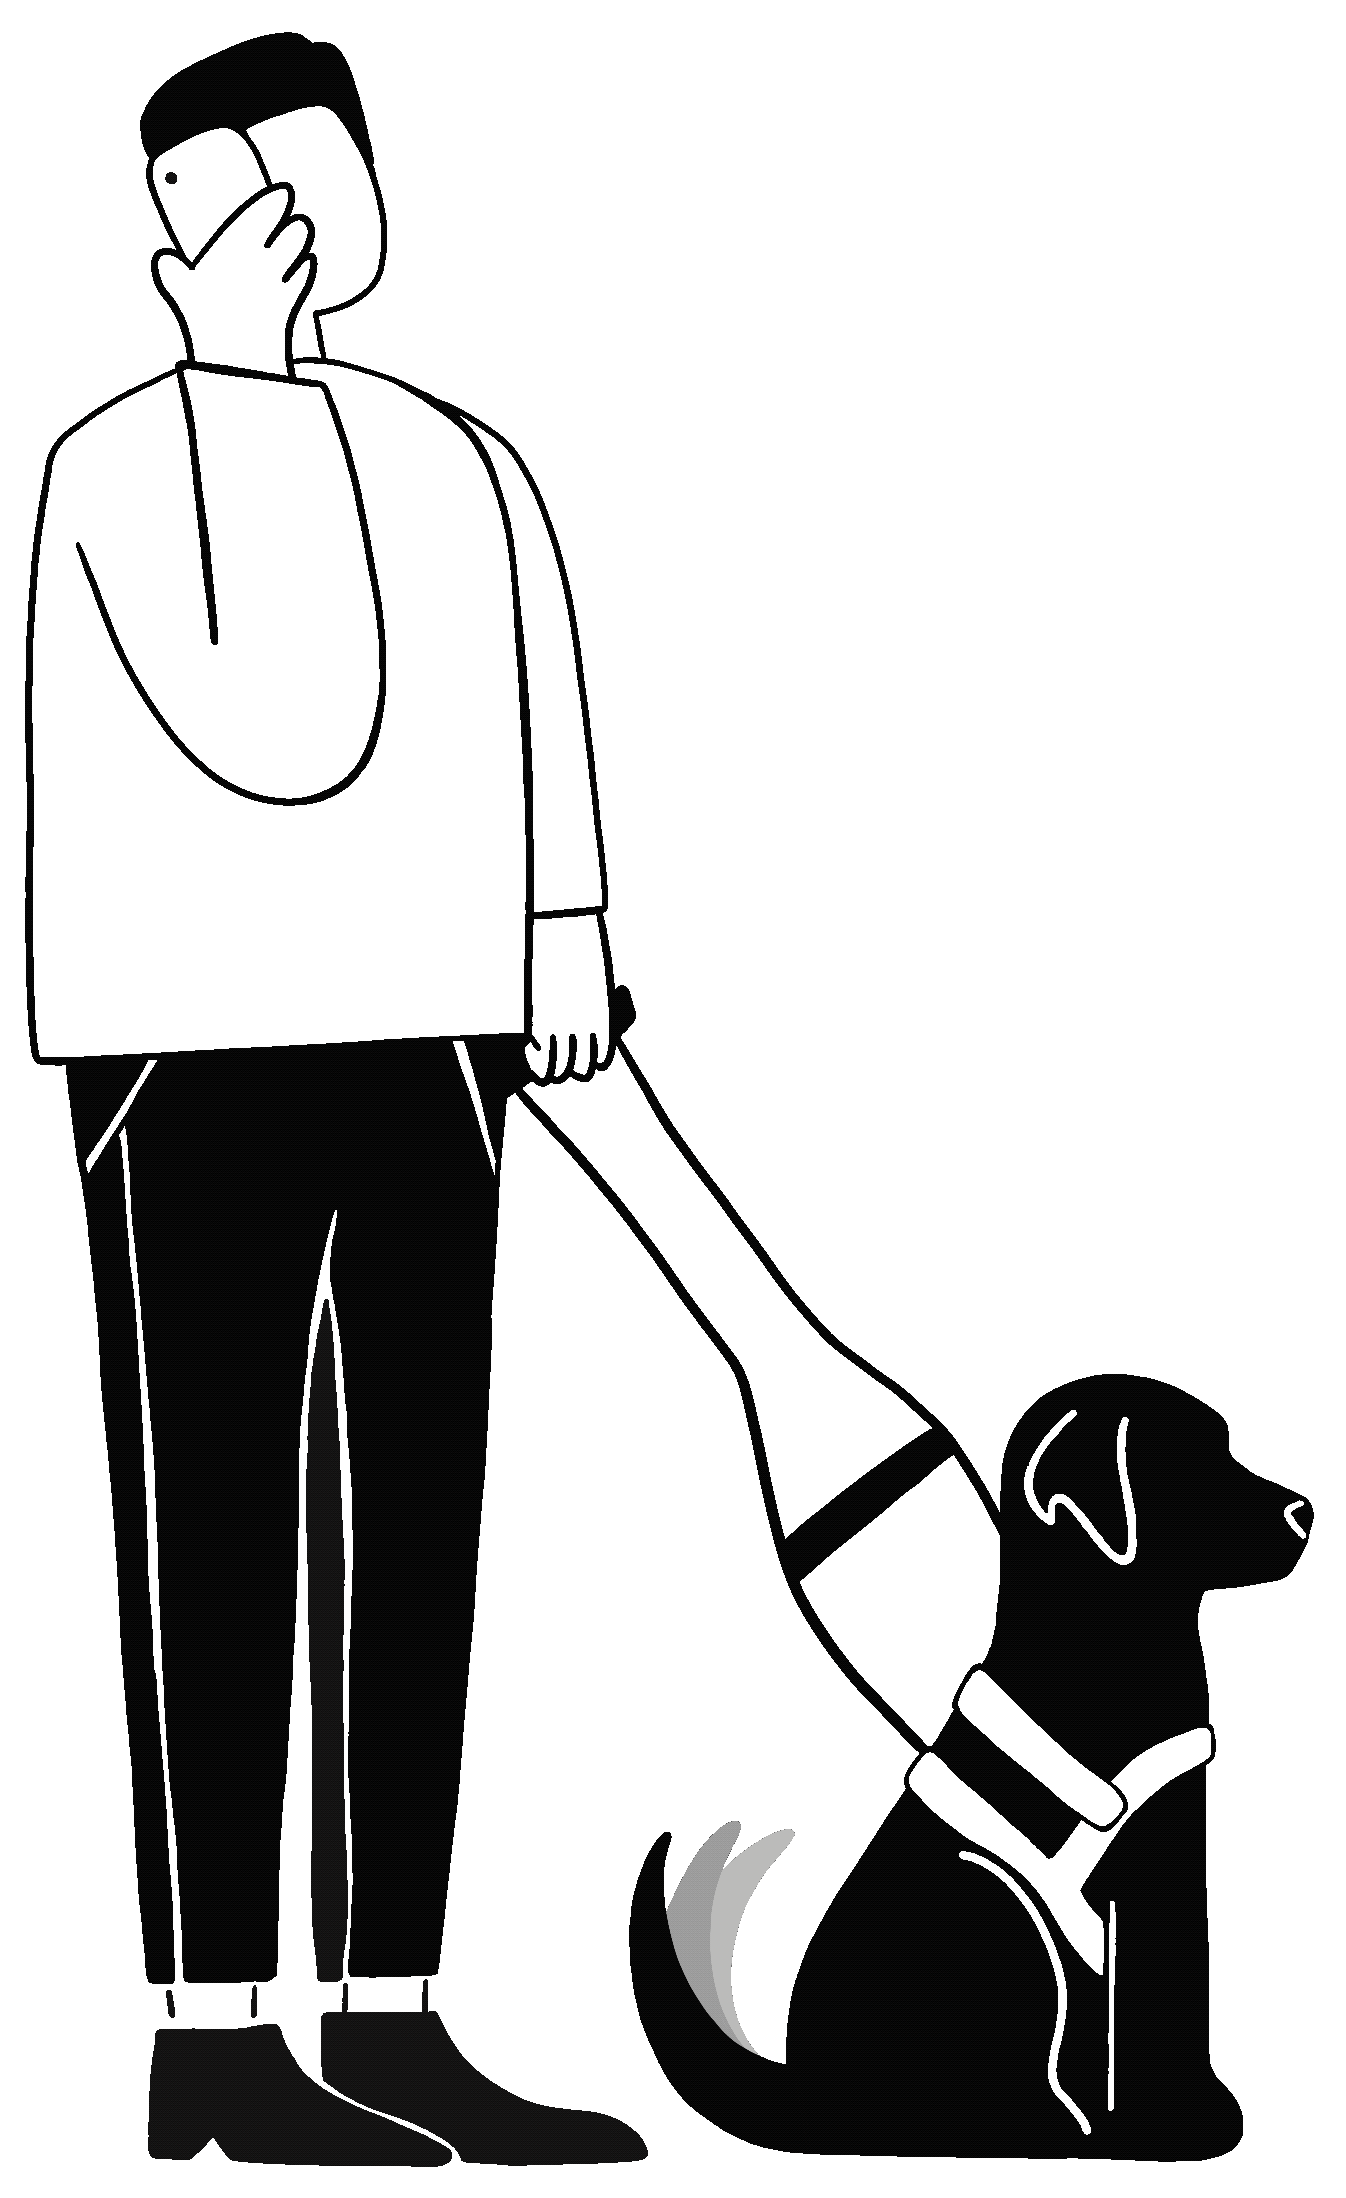 Animatie van een zwarte lijntekening: Man staat naast zijn zwarte zittende labrador in harnas. De man houdt met zijn ene hand een gsm aan zijn oor en met zijn andere het harnas. De hond zit braafjes neer met een kwispelende staart.